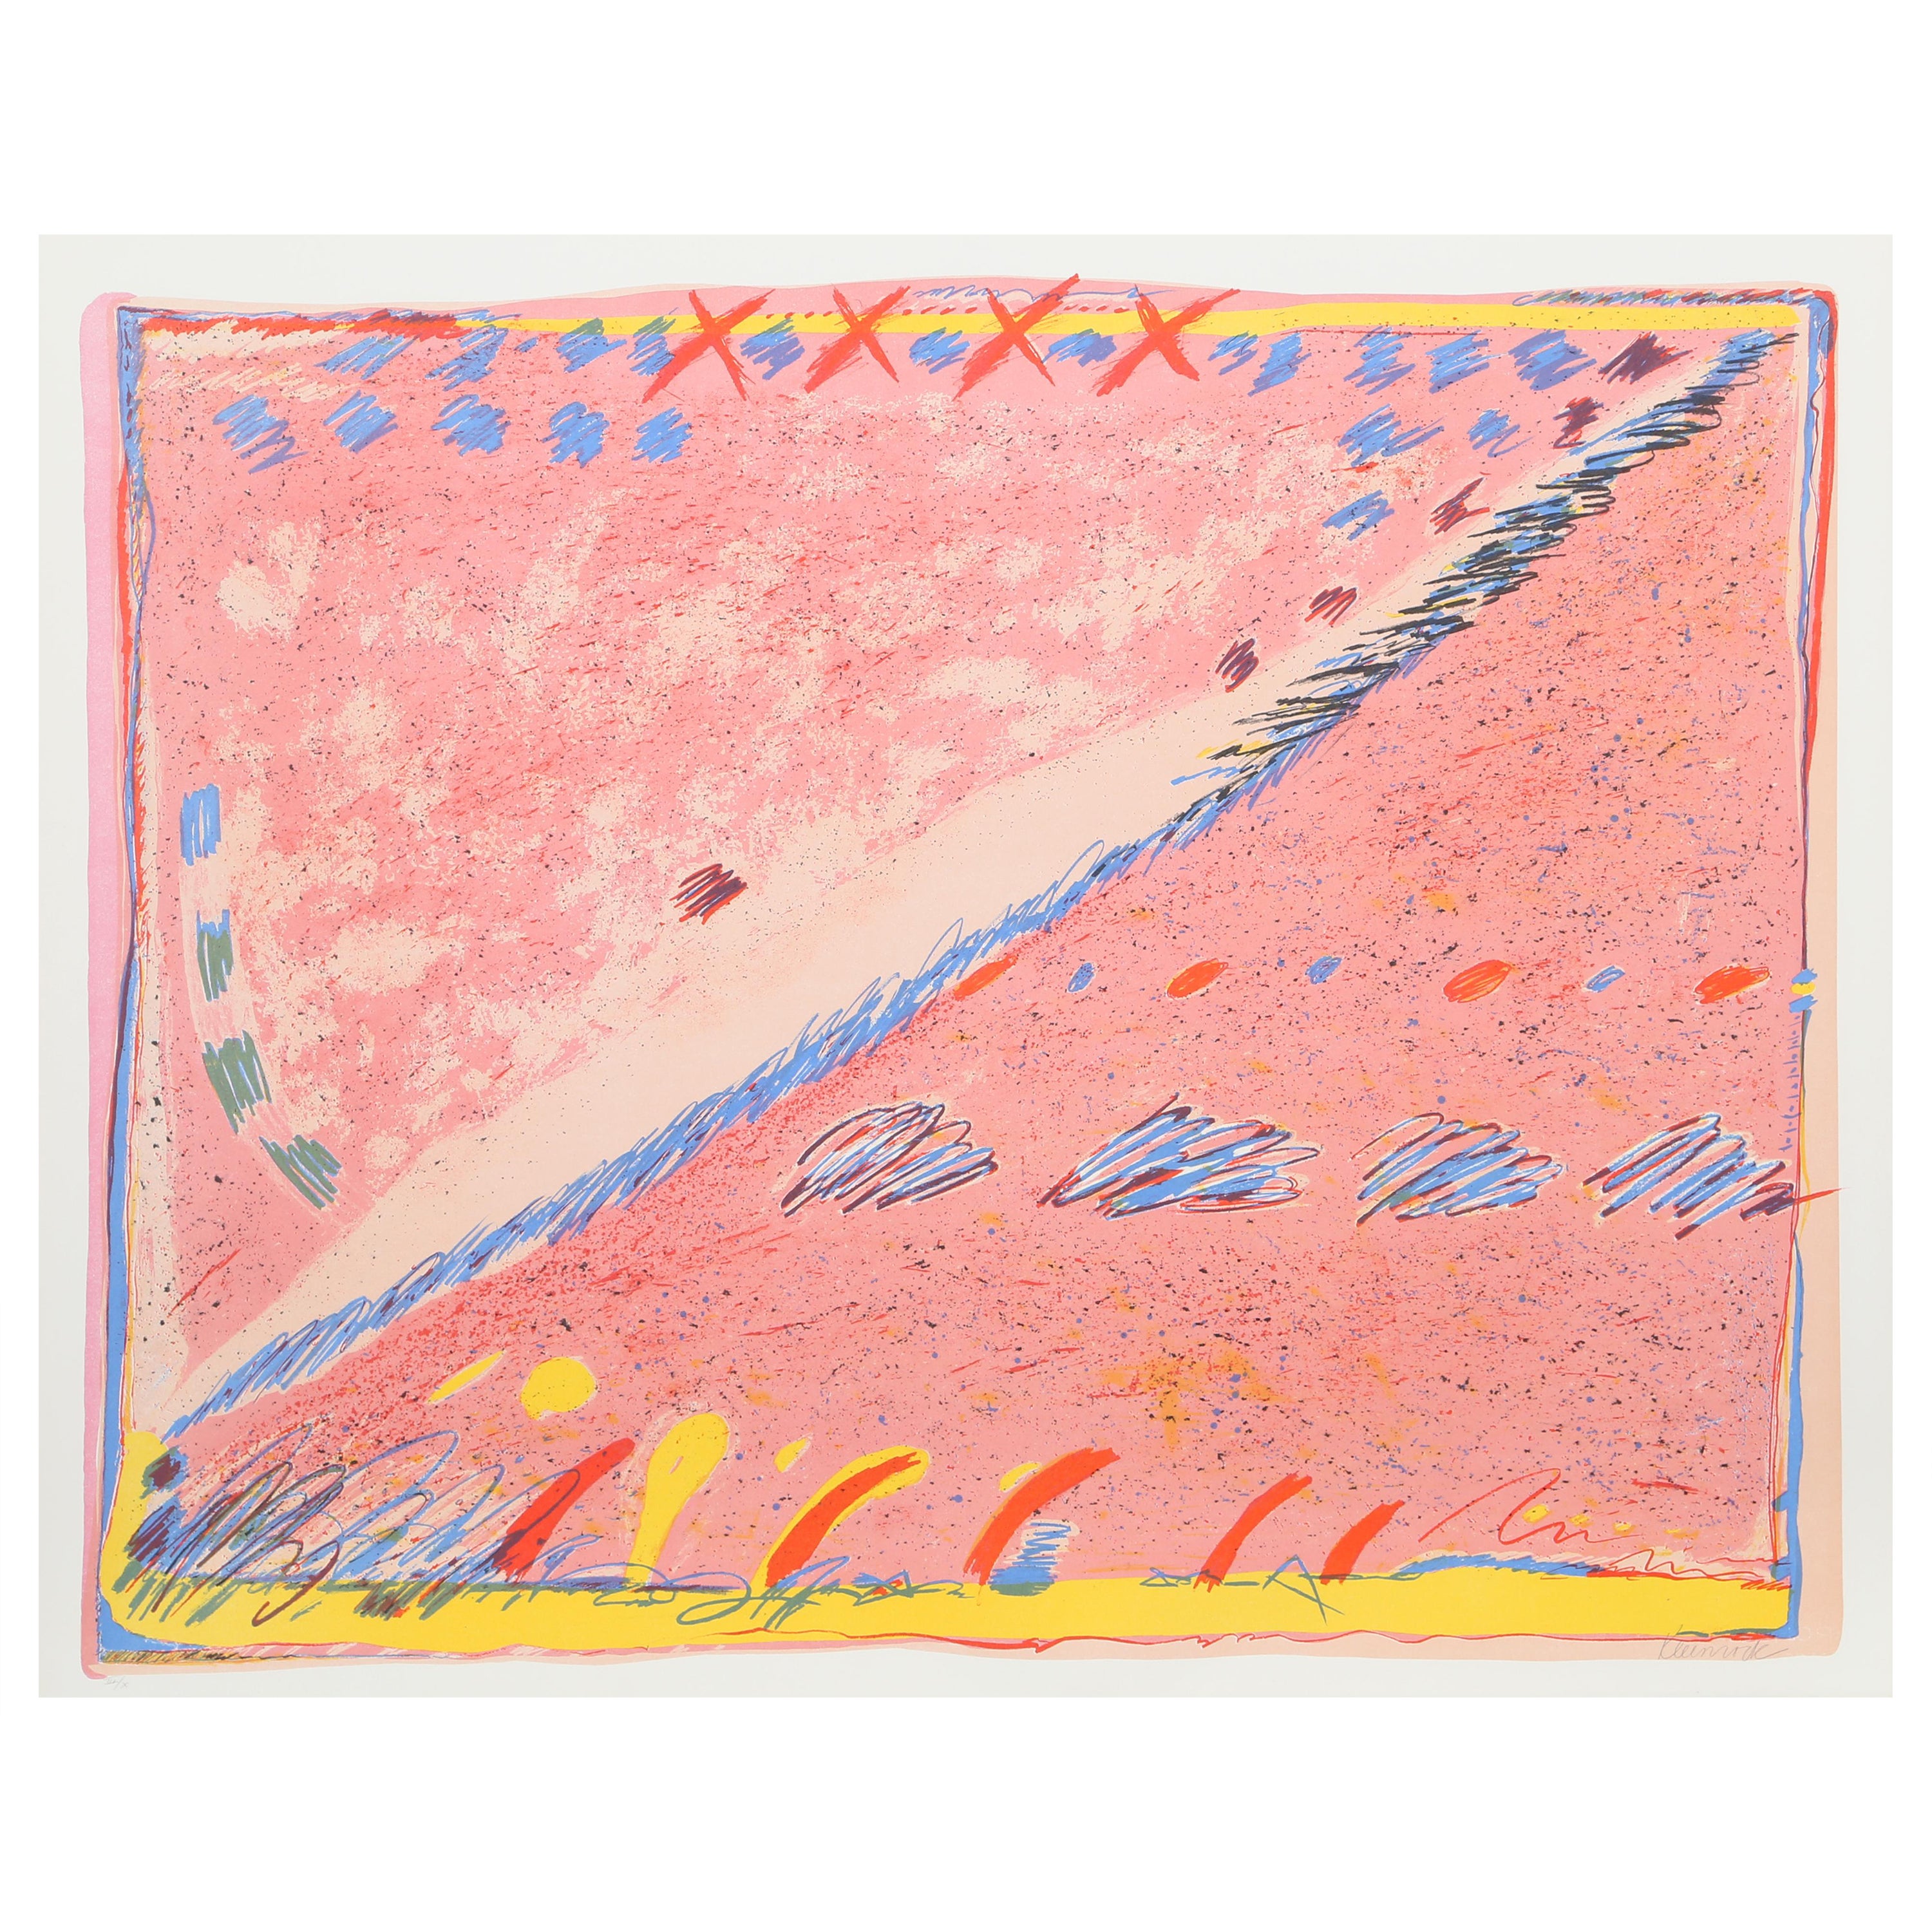 Das Werk von Sybil Kleinrock bewegt sich an der Grenze zwischen Expressionismus und Surrealismus. Farbenfrohe und weiche Pastellfarben spielen zusammen und suggerieren eine Komposition, die sowohl als Darstellung einer Landschaft als auch als